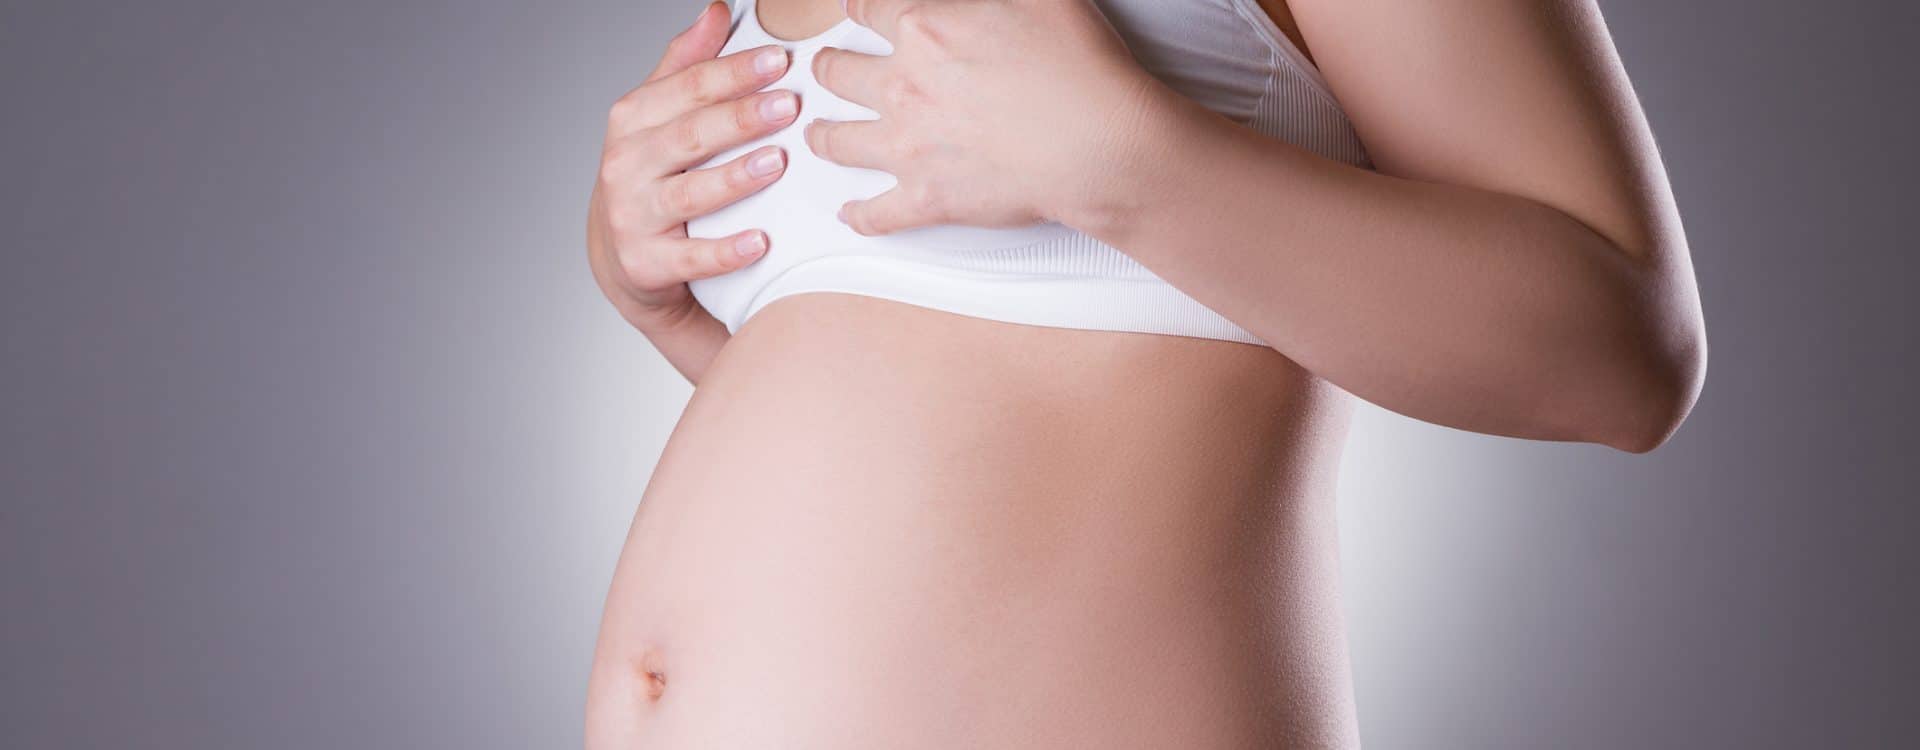 pregnancy and breast feeding period